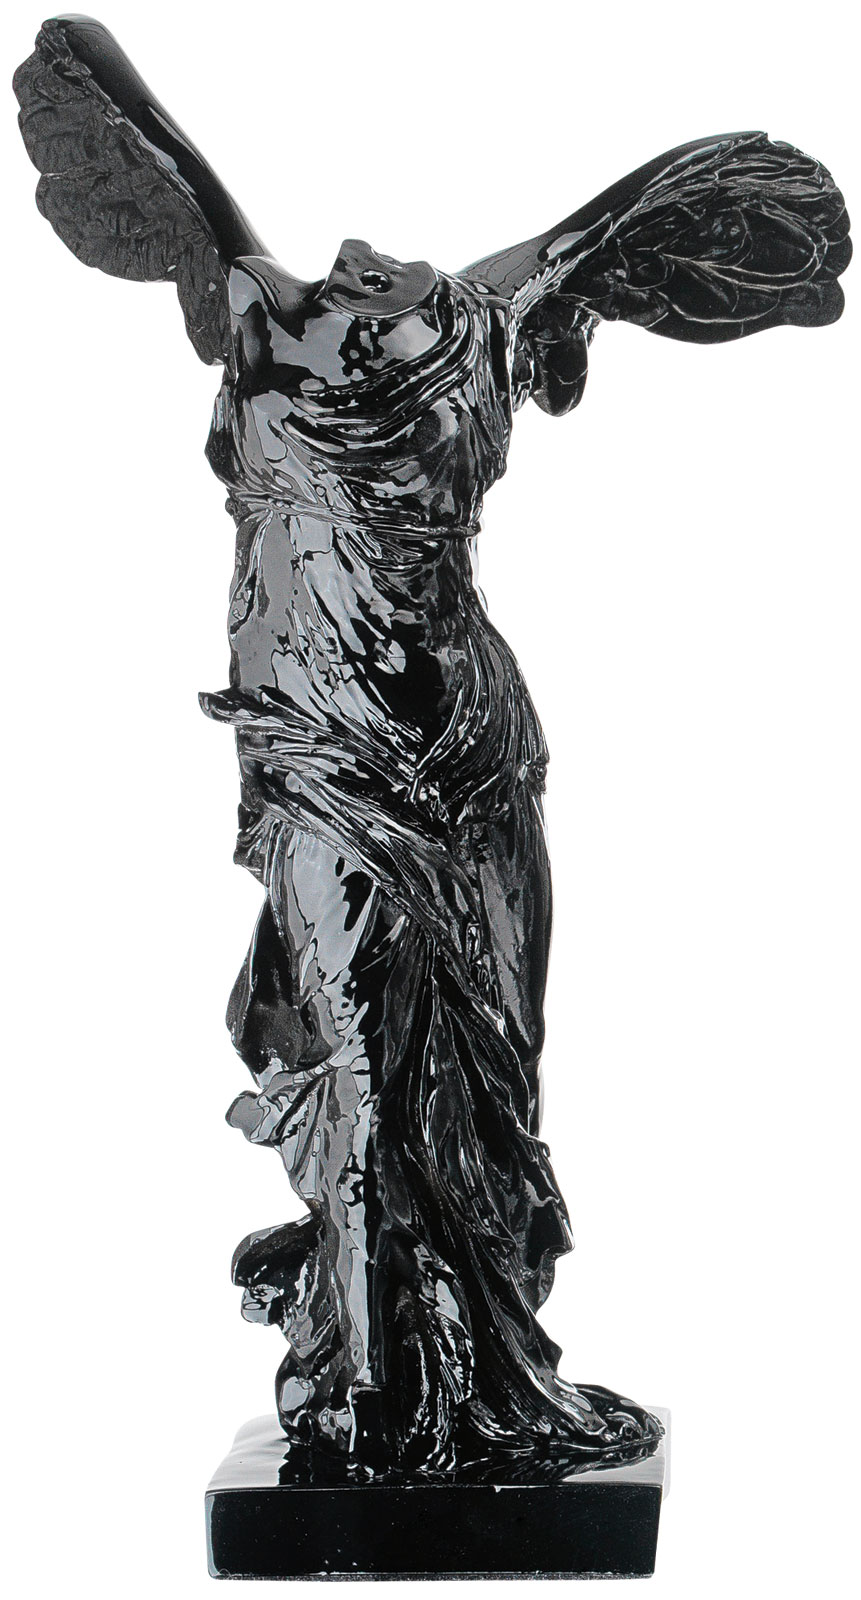 Skulptur "Nike von Samothrake", Kunstguss schwarz